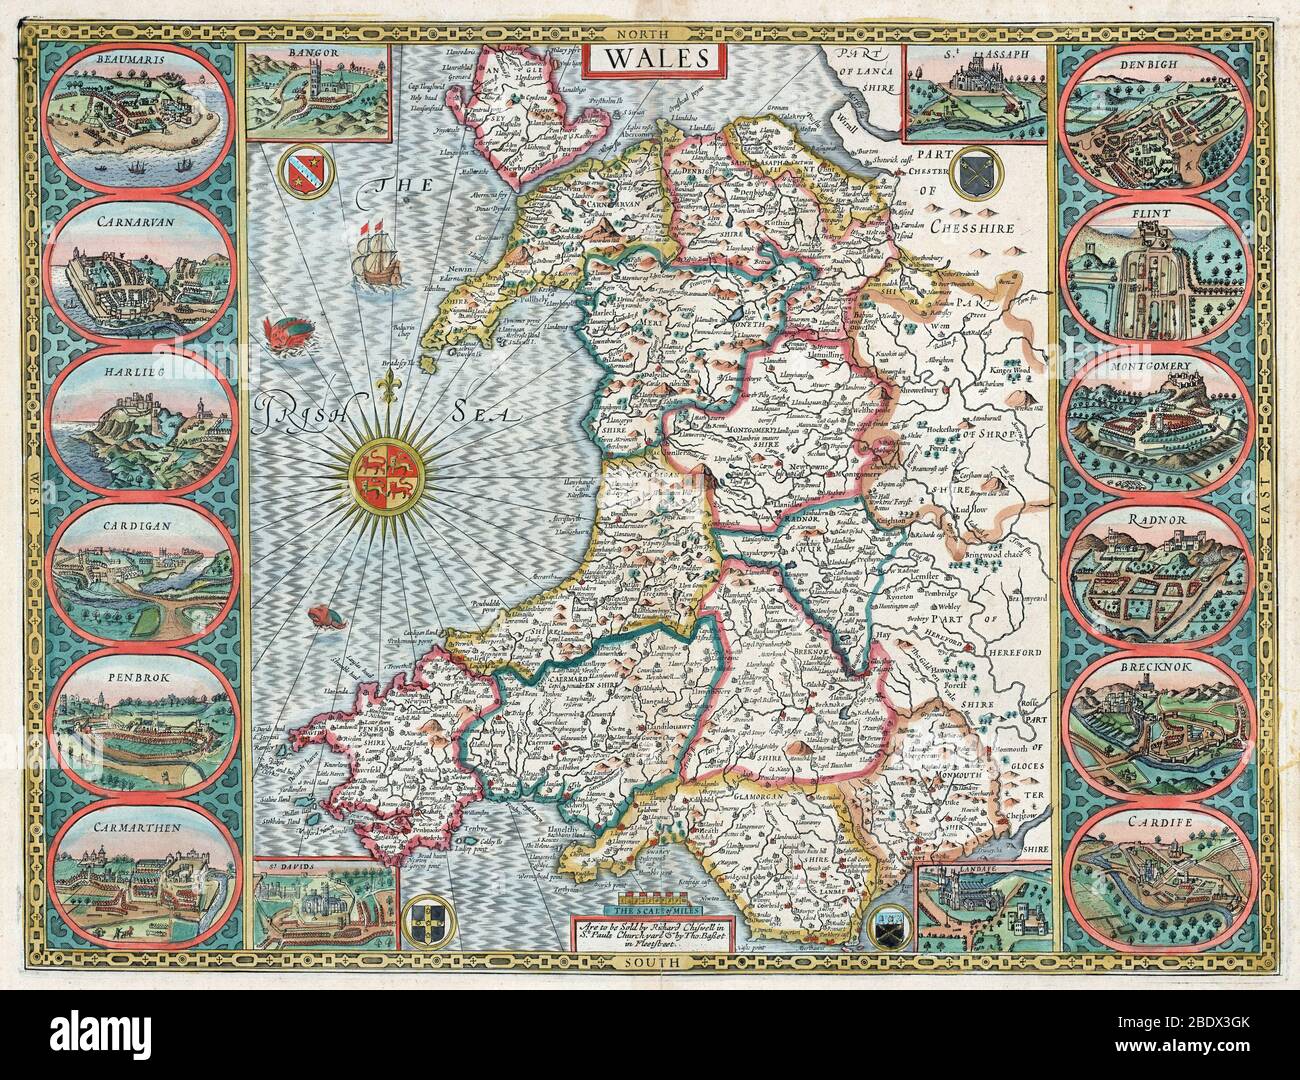 John Speed, carte du Pays de Galles, 1611 Banque D'Images